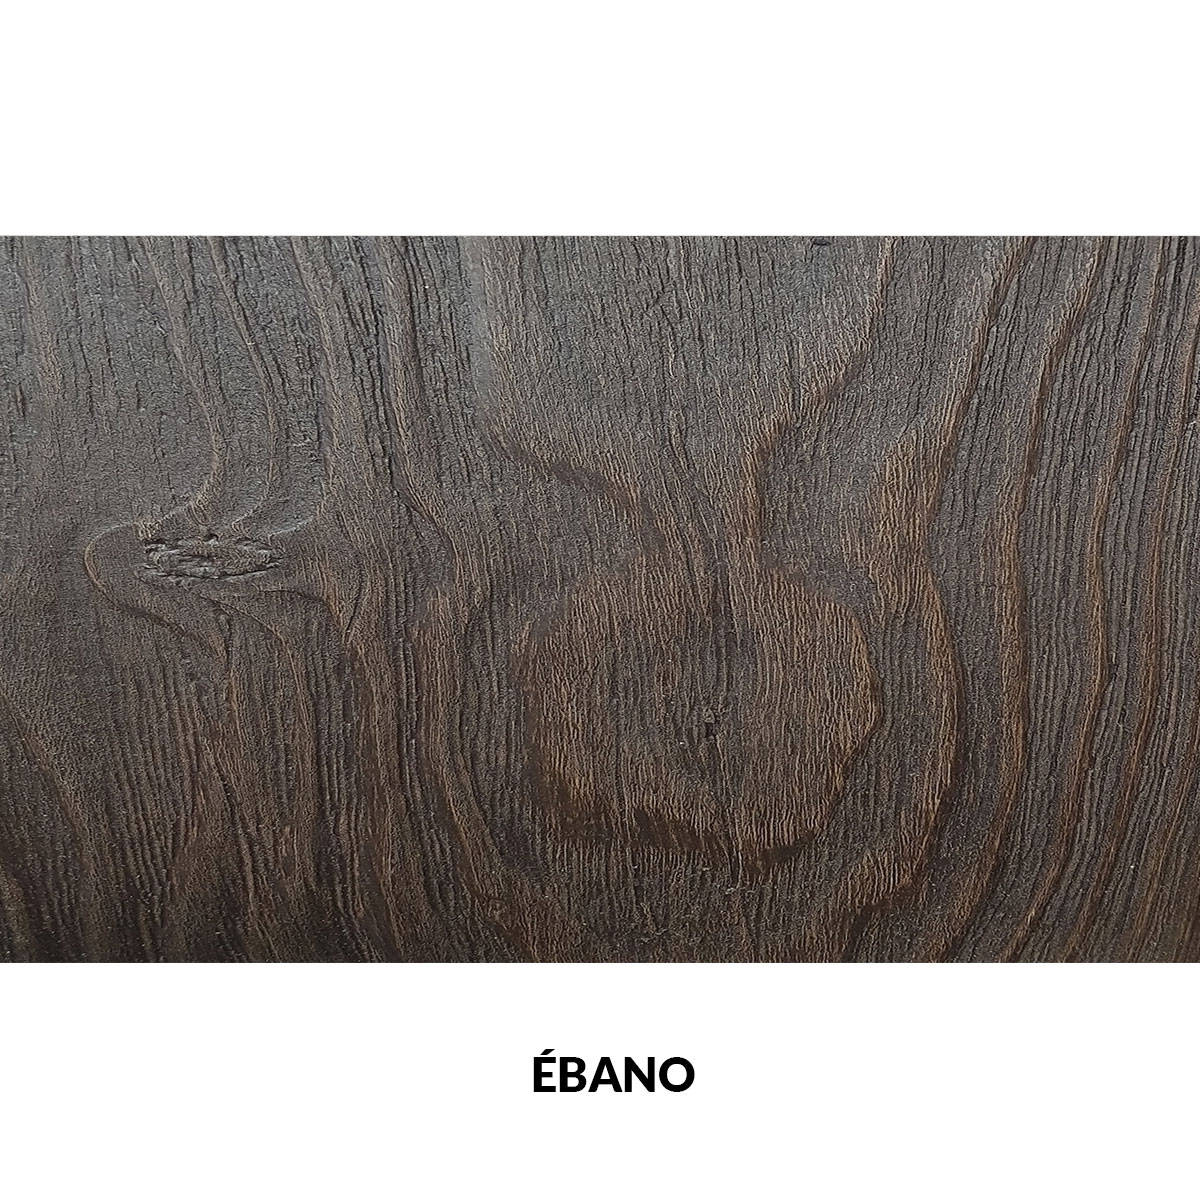 Panel rústico de tres lamas imitación madera de 300x62cm ebano